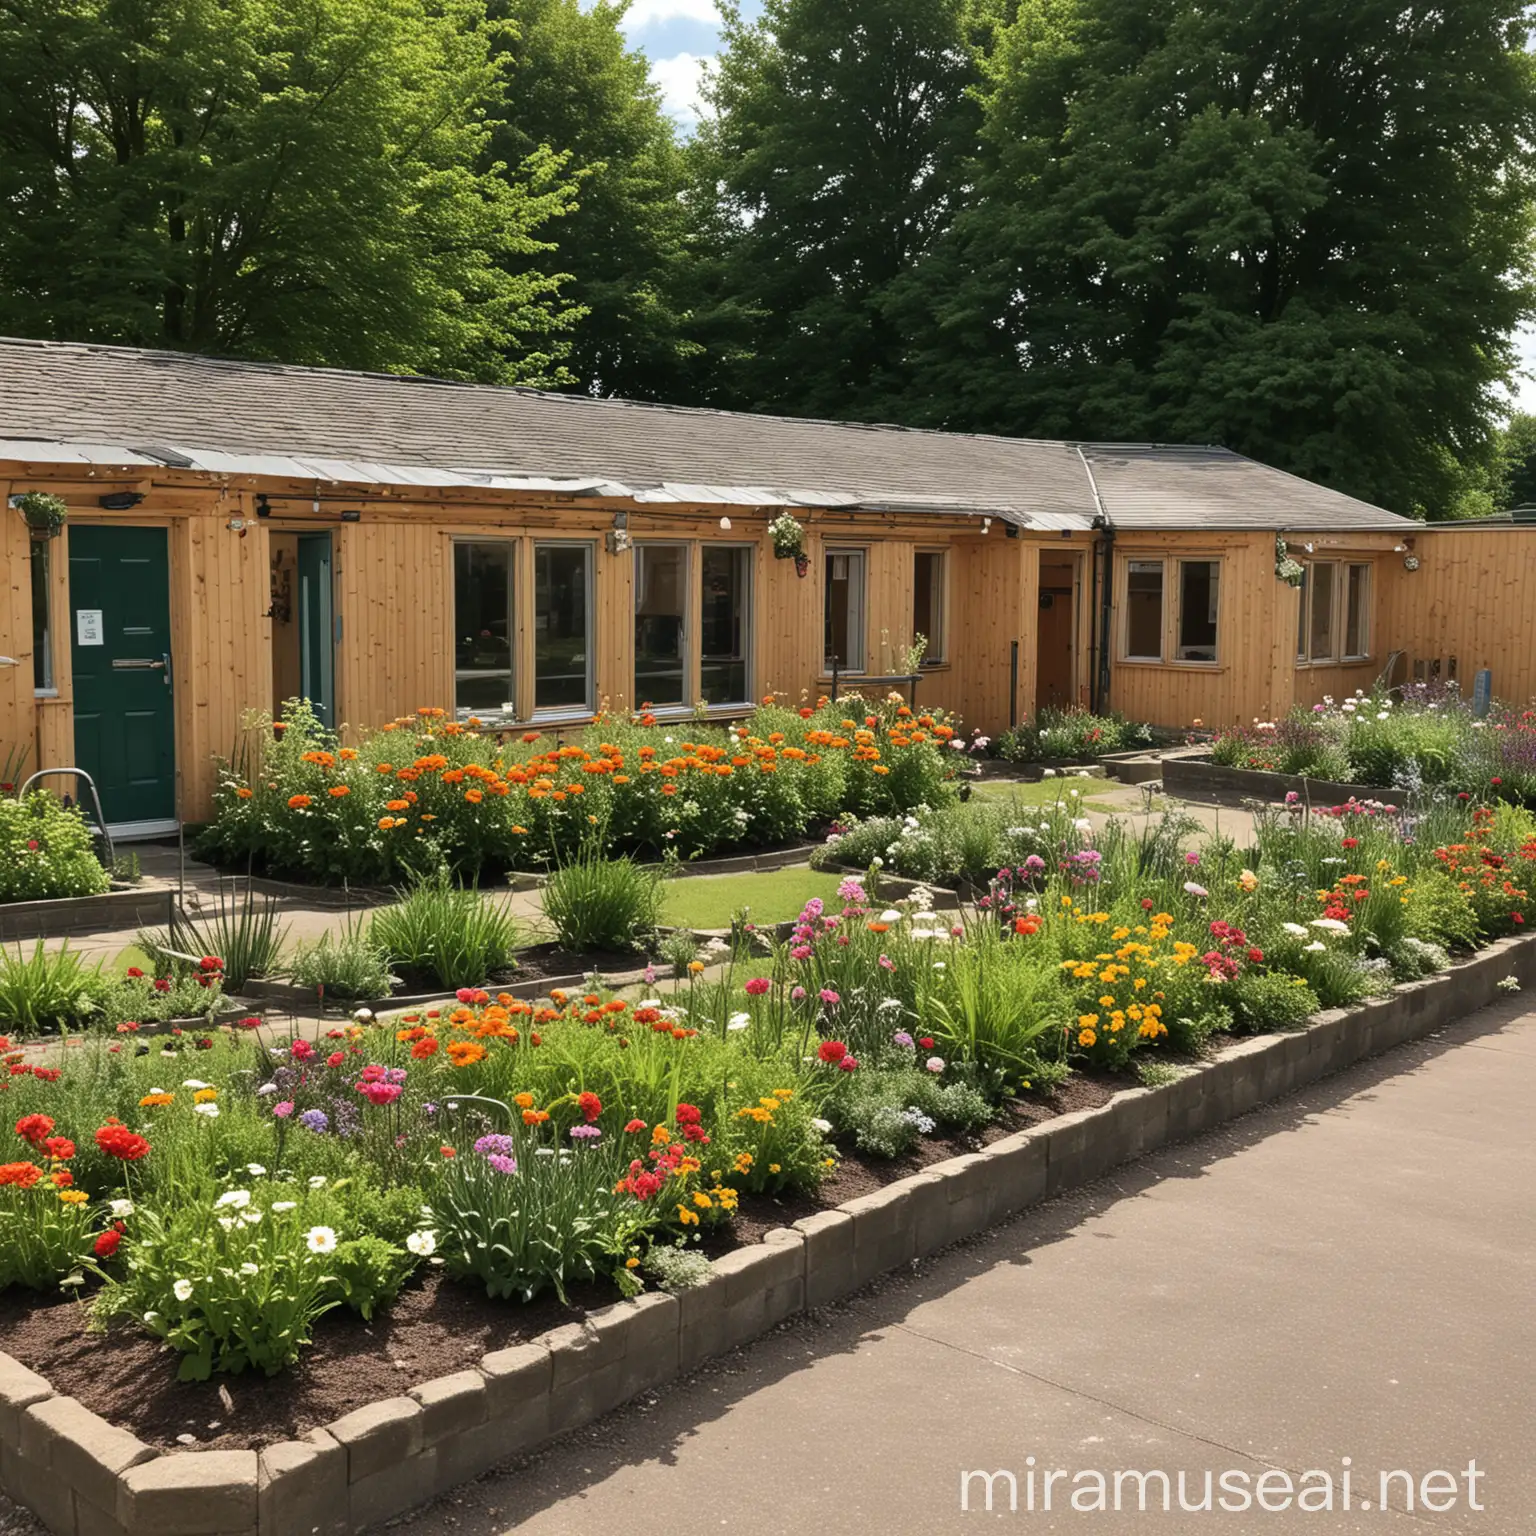 Schoolyard with Flower Beds Outdoor Classroom Scene